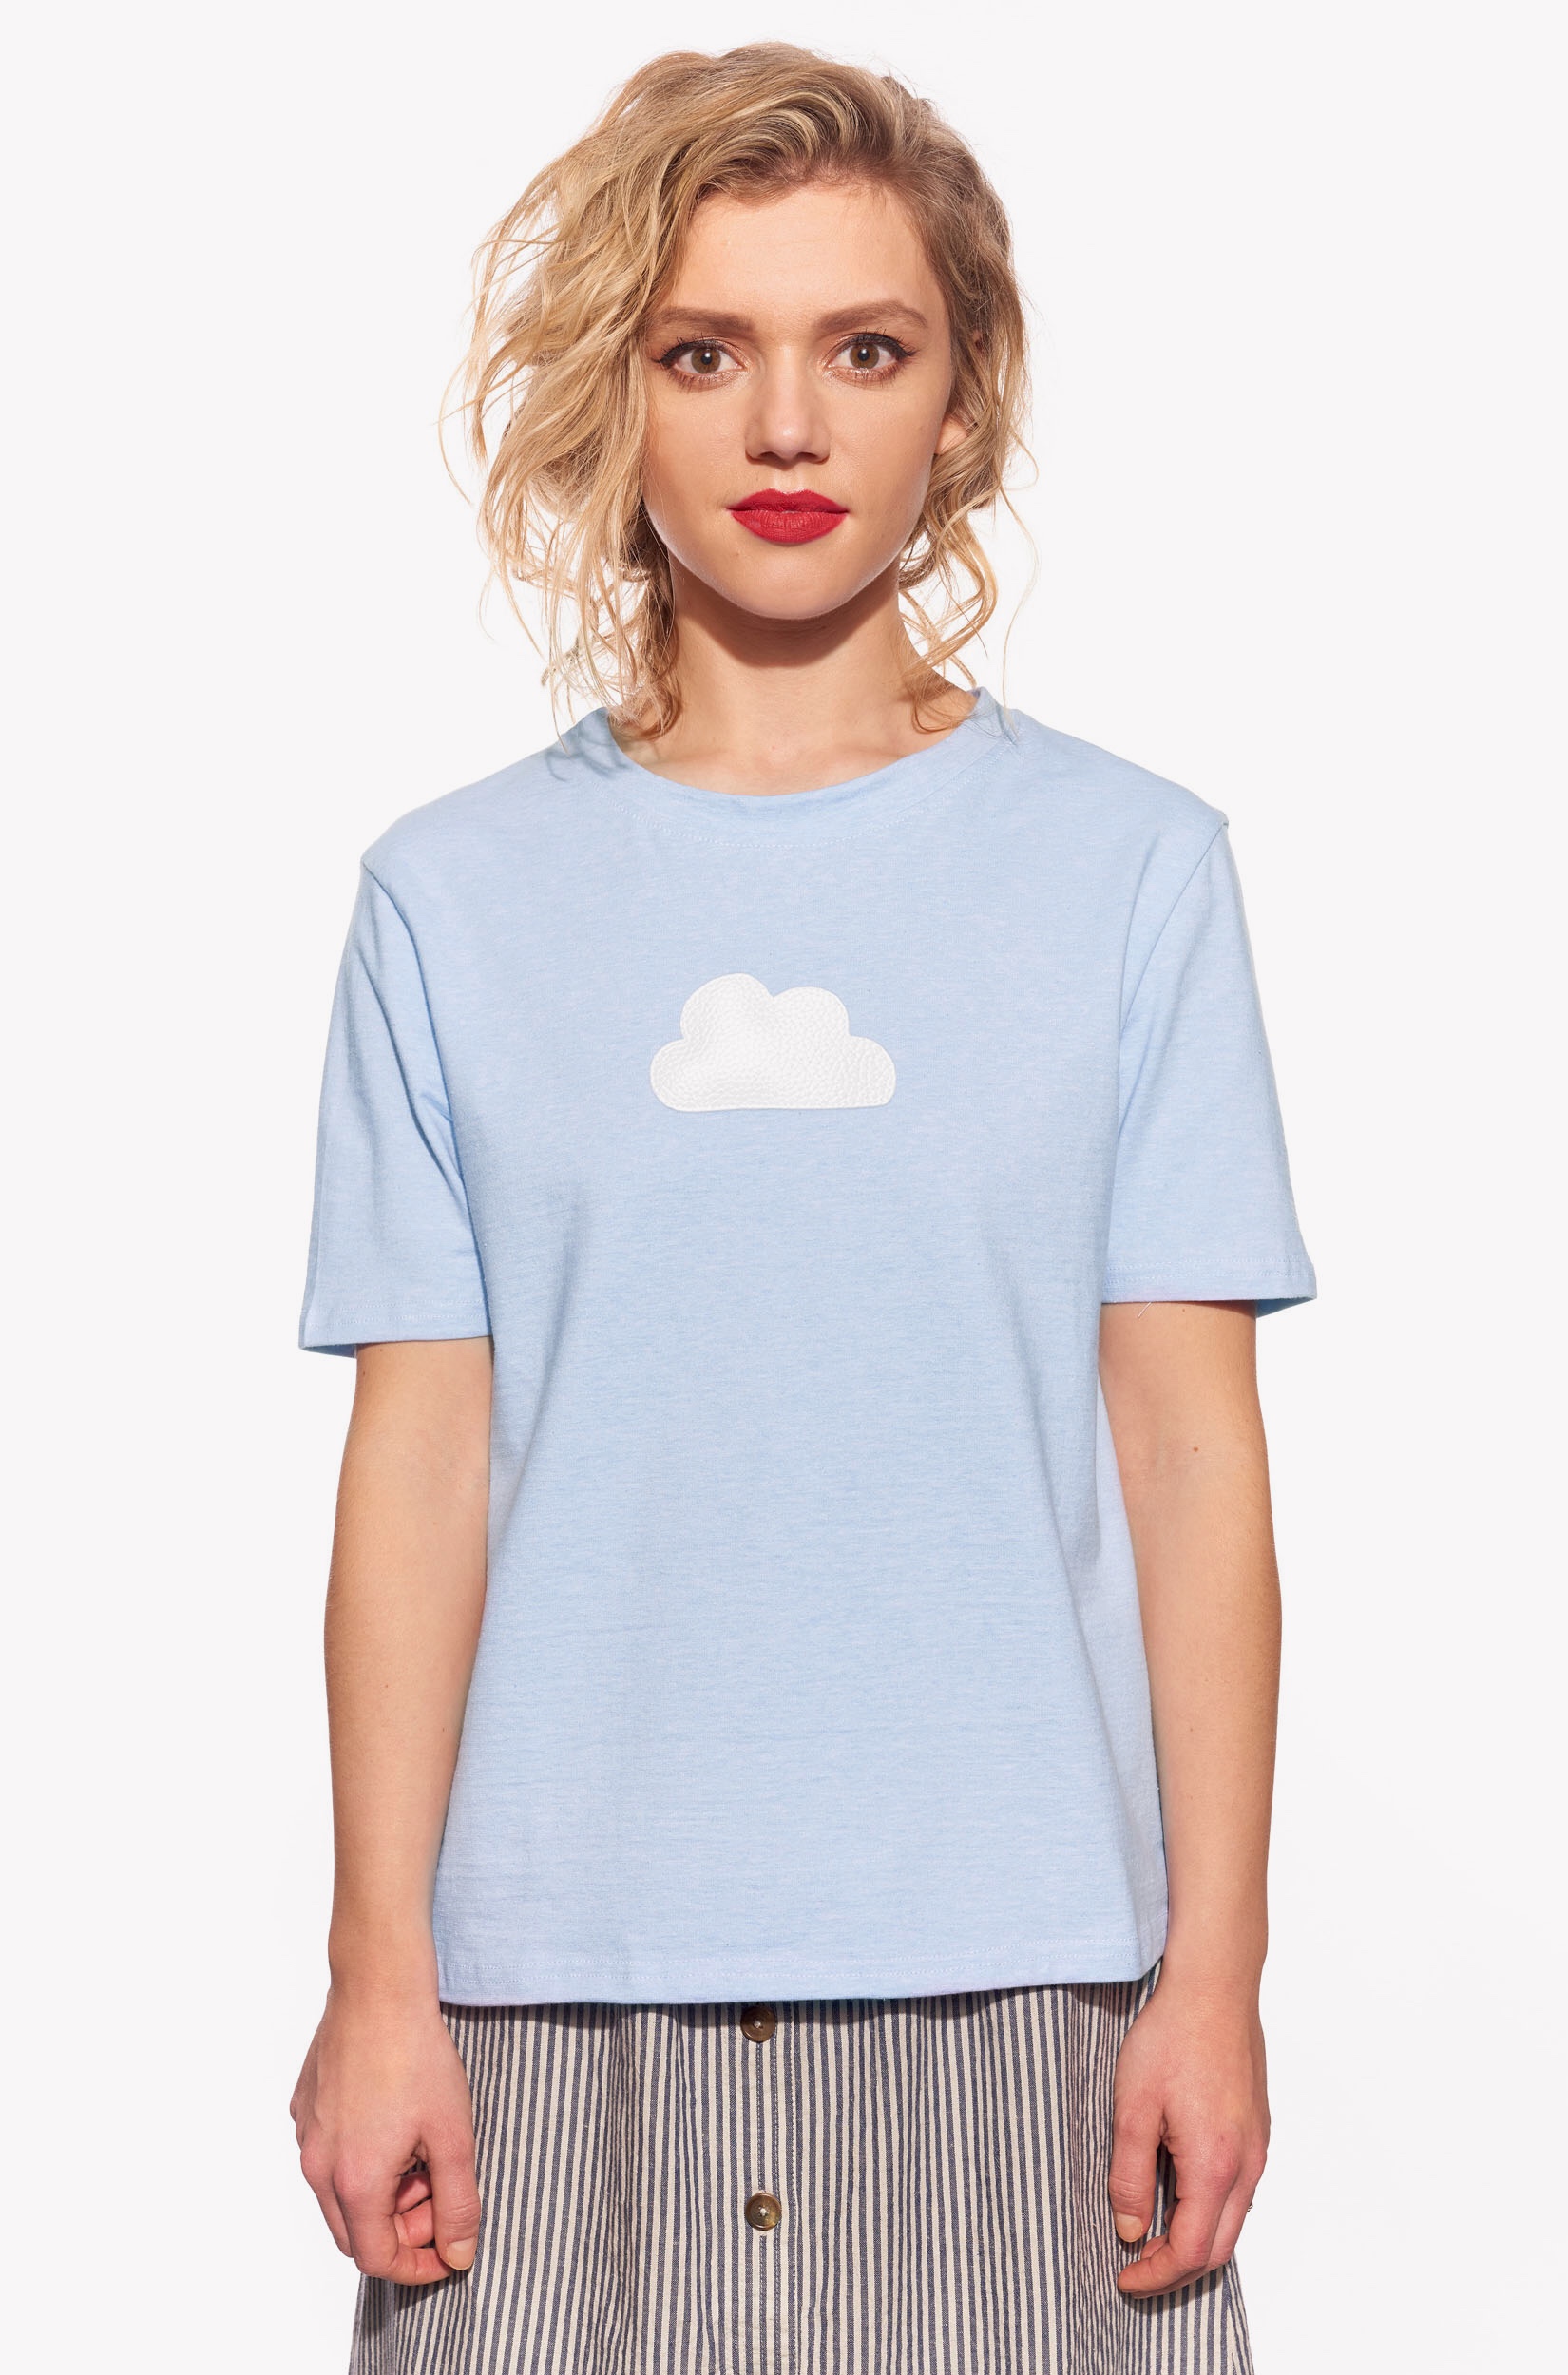 Tričko s oblakem